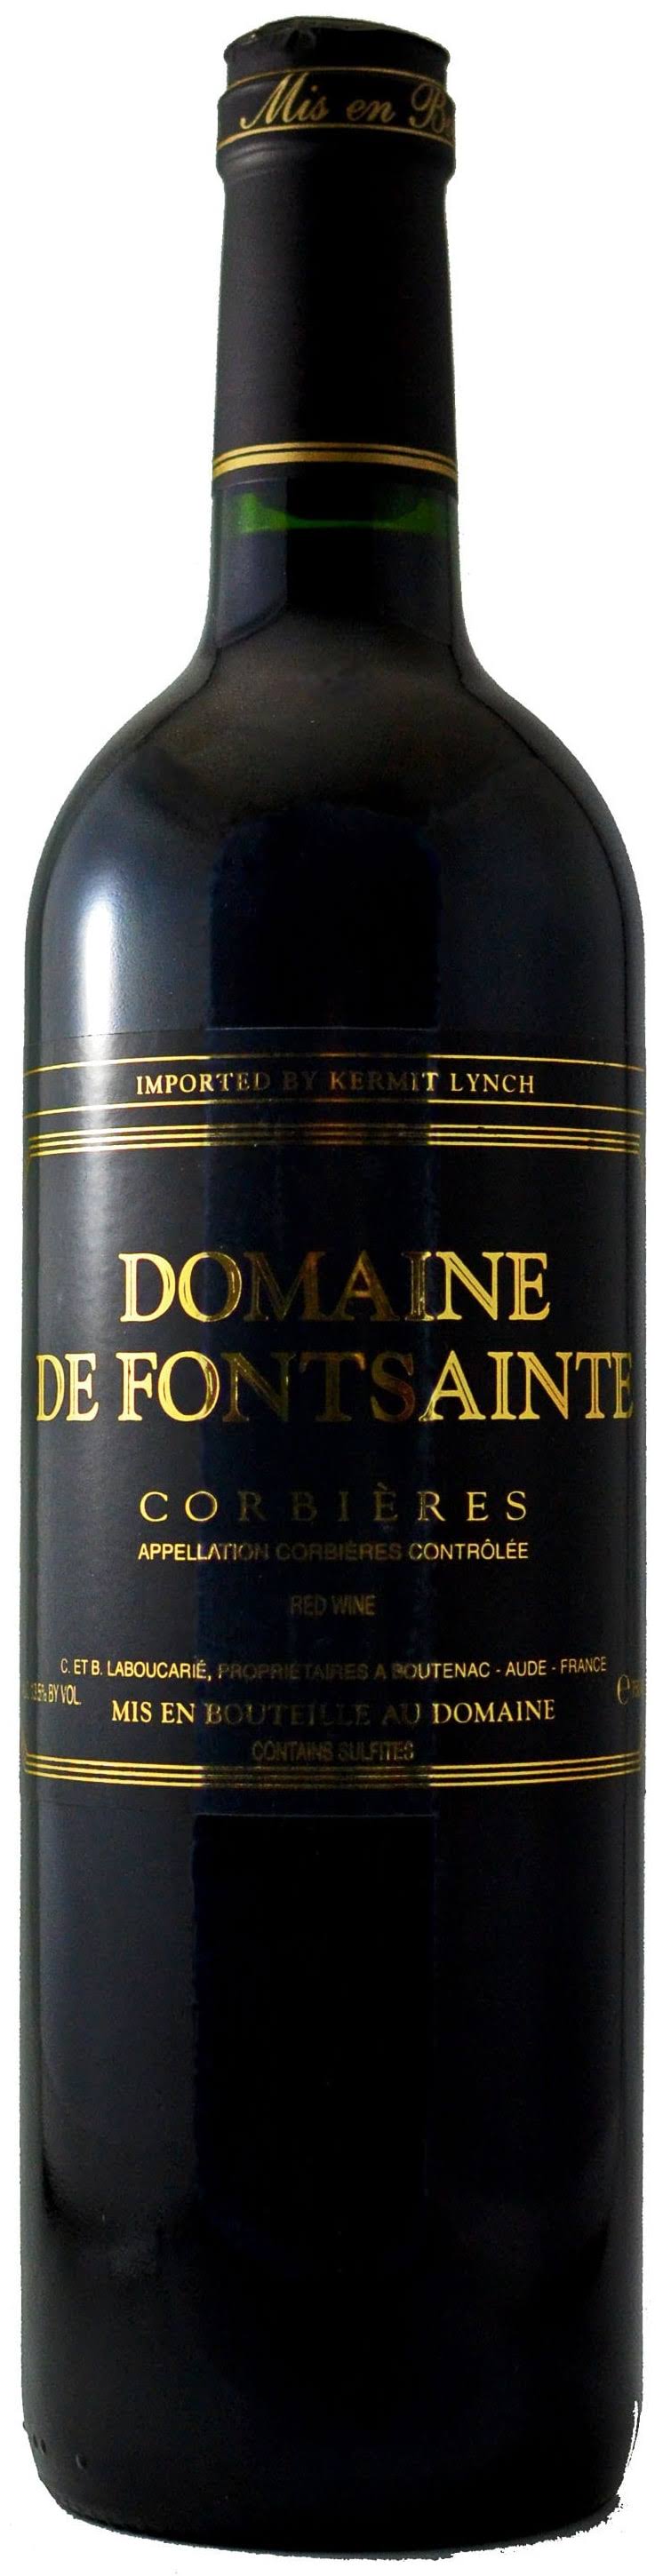 Domaine de Fontsainte Corbieres, France (Vintage Varies) - 750 ml bottle